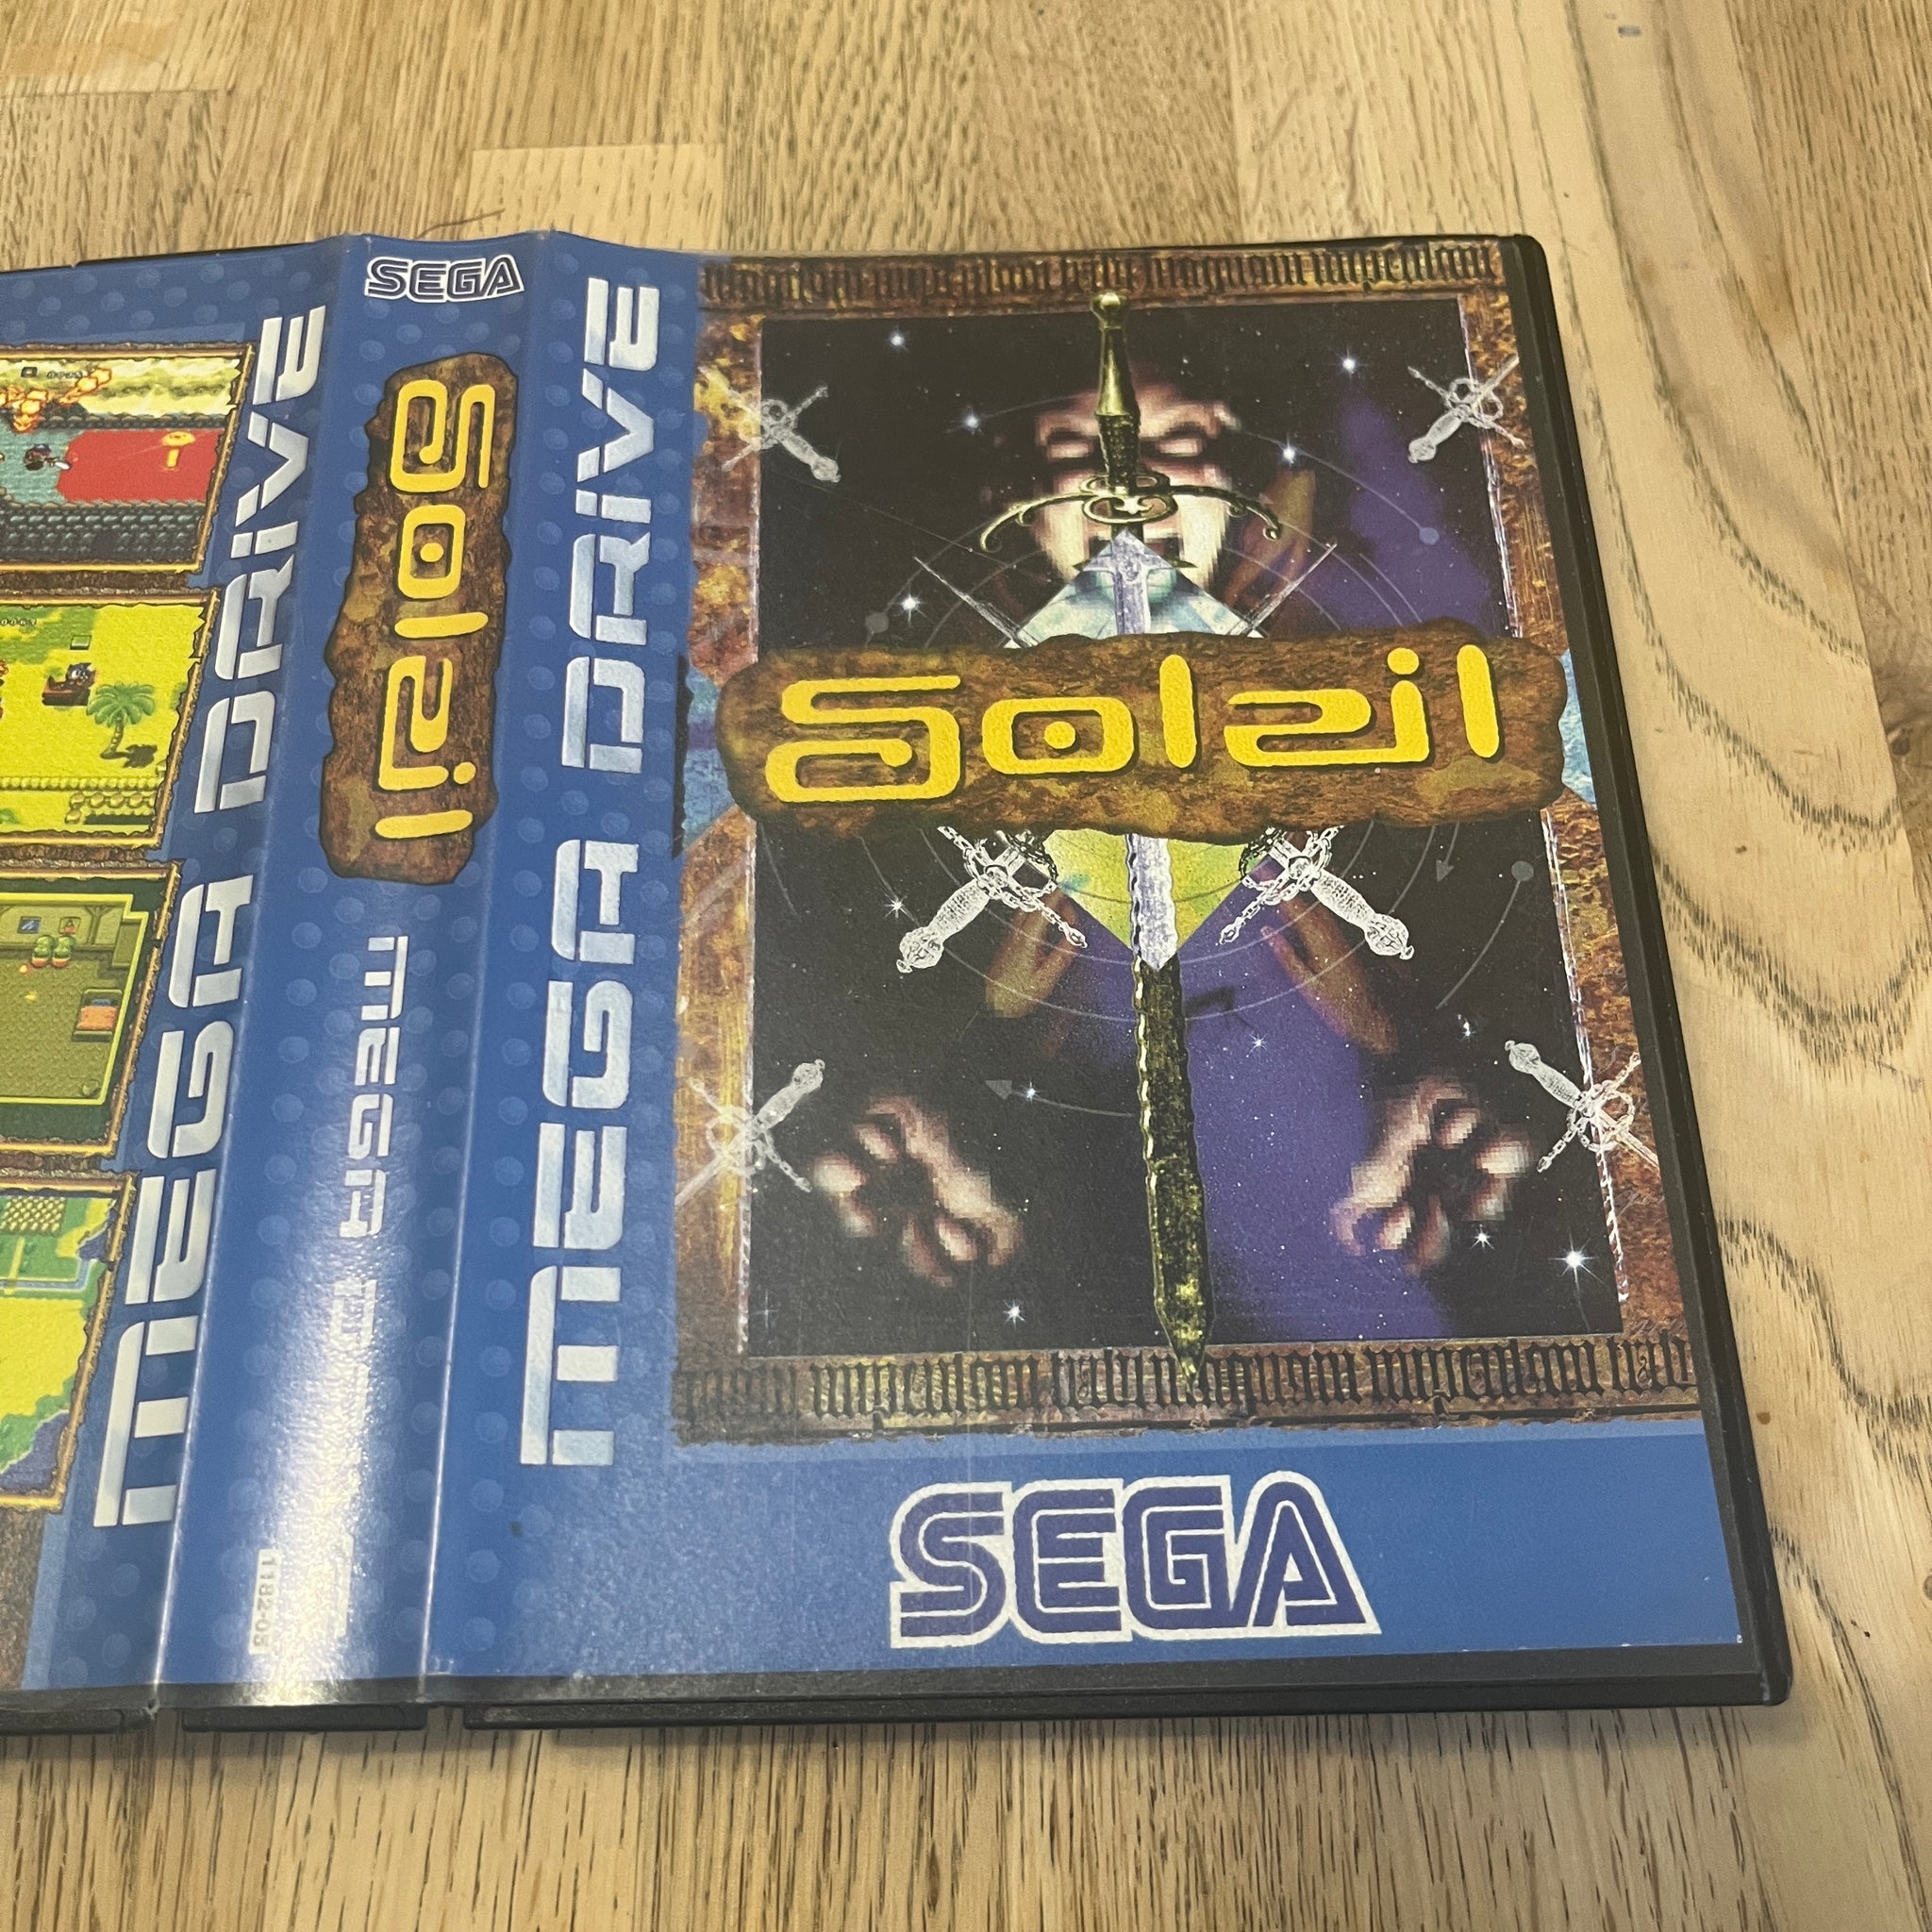 Soleil Sega Mega Drive game